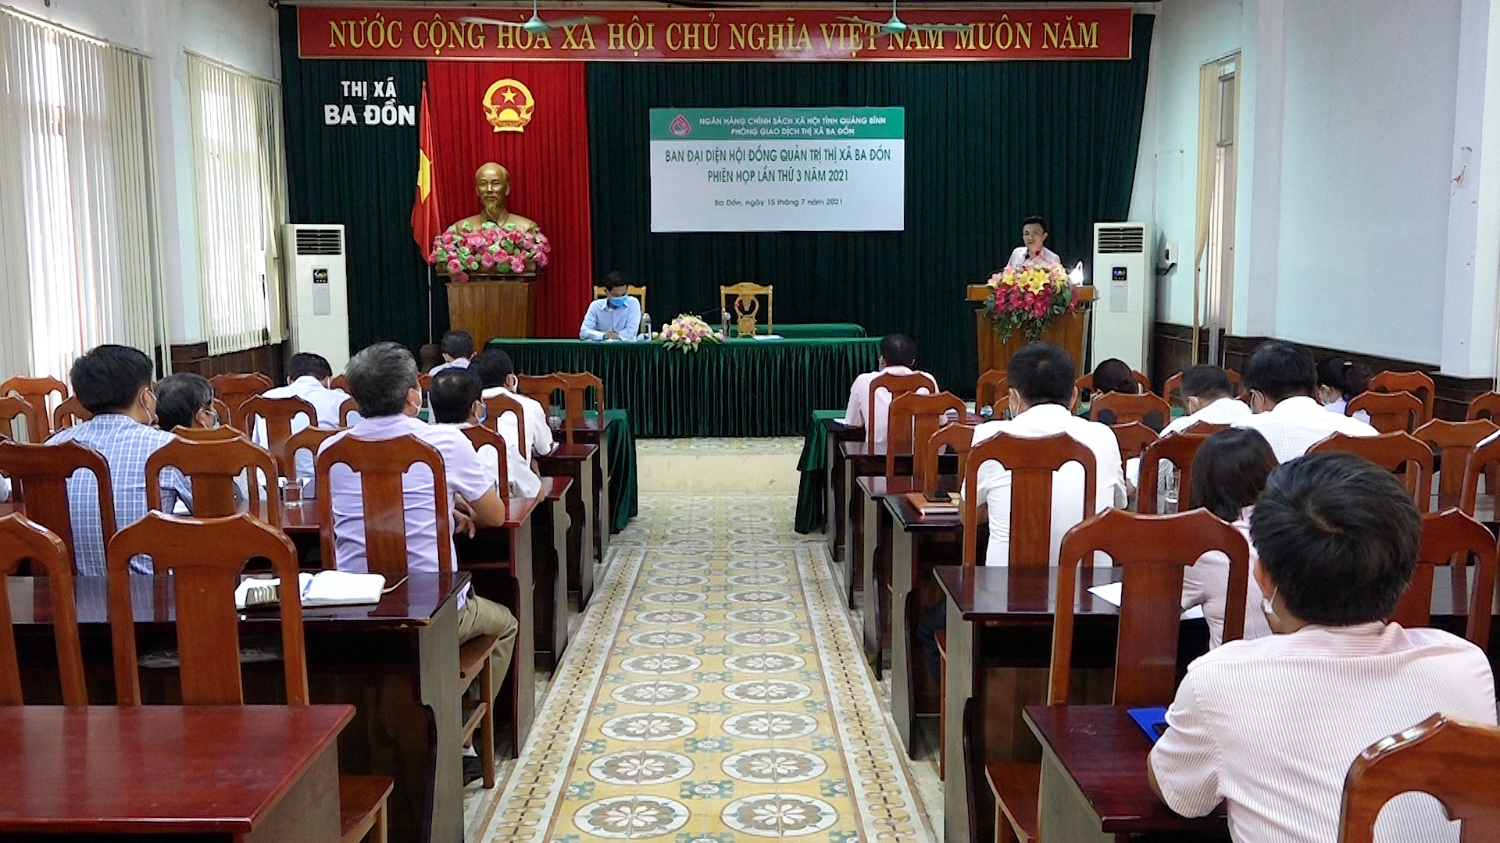 Toàn cảnh hội nghị Ban đại diện hội đồng quản trị NHCS thị xã Ba Đồn phiên họp lần thứ 3 năm 2021.